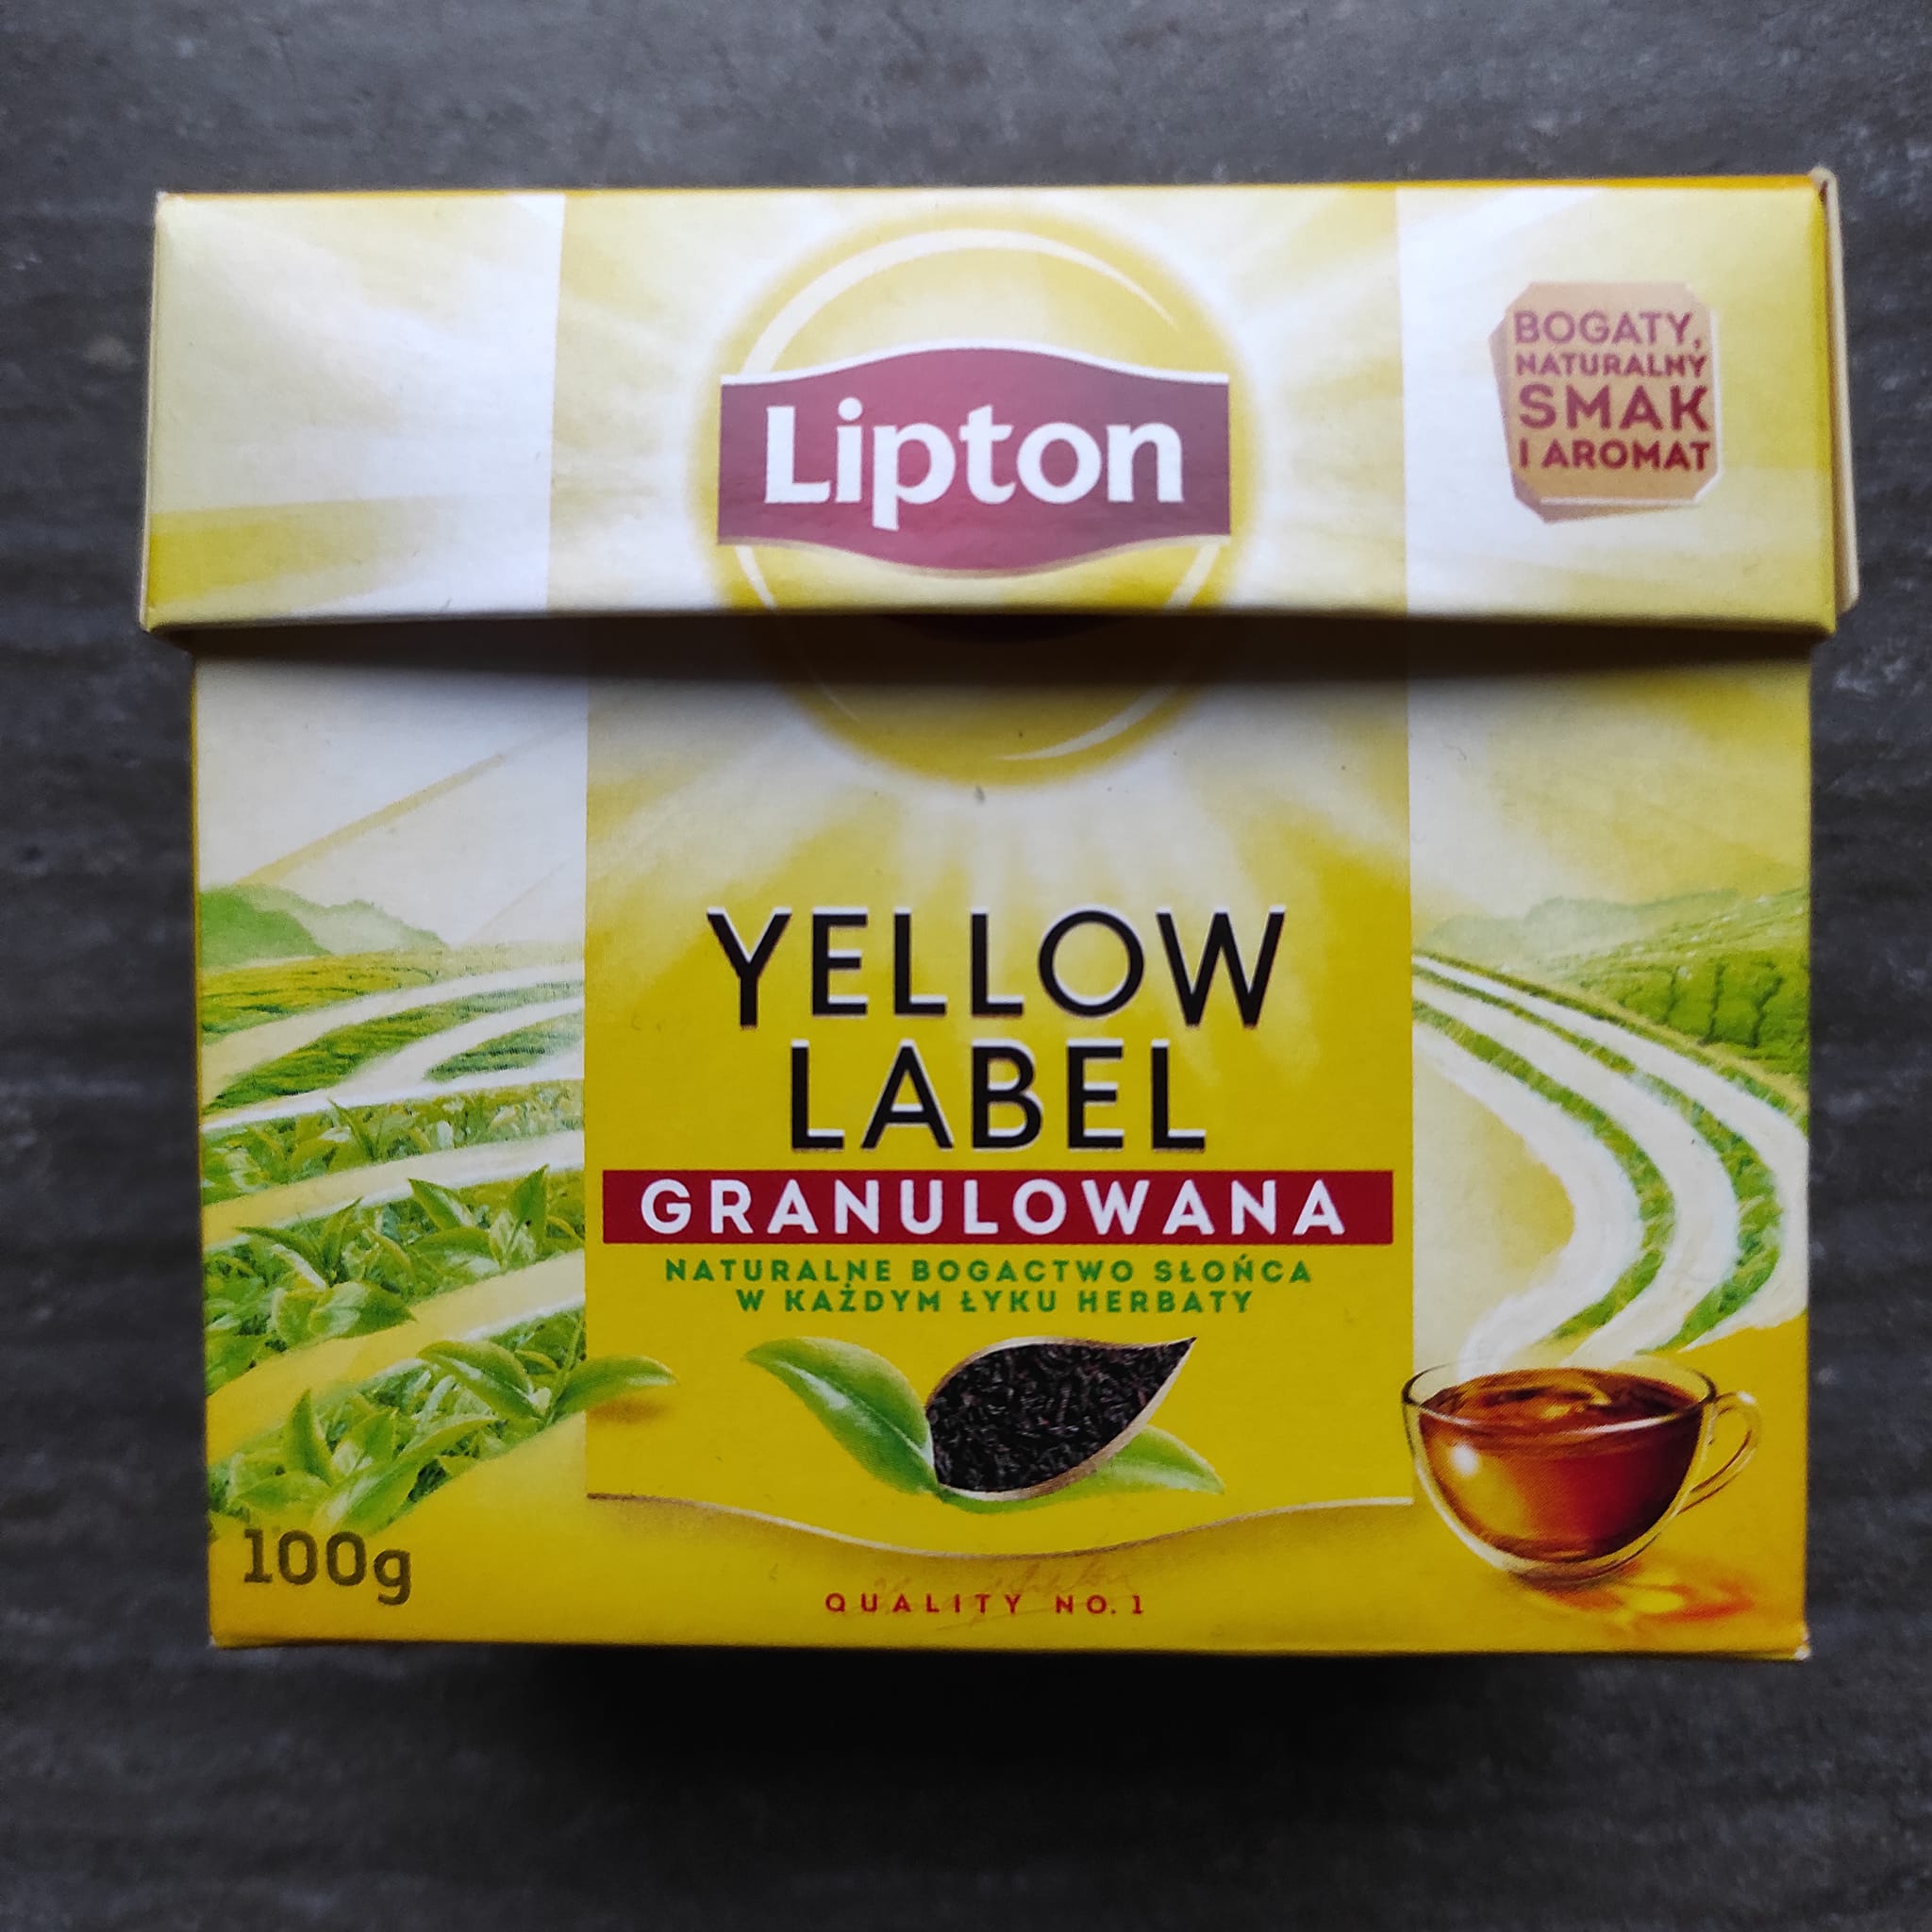 Herbata granulowana Yellow Label – Lipton 5 (1)